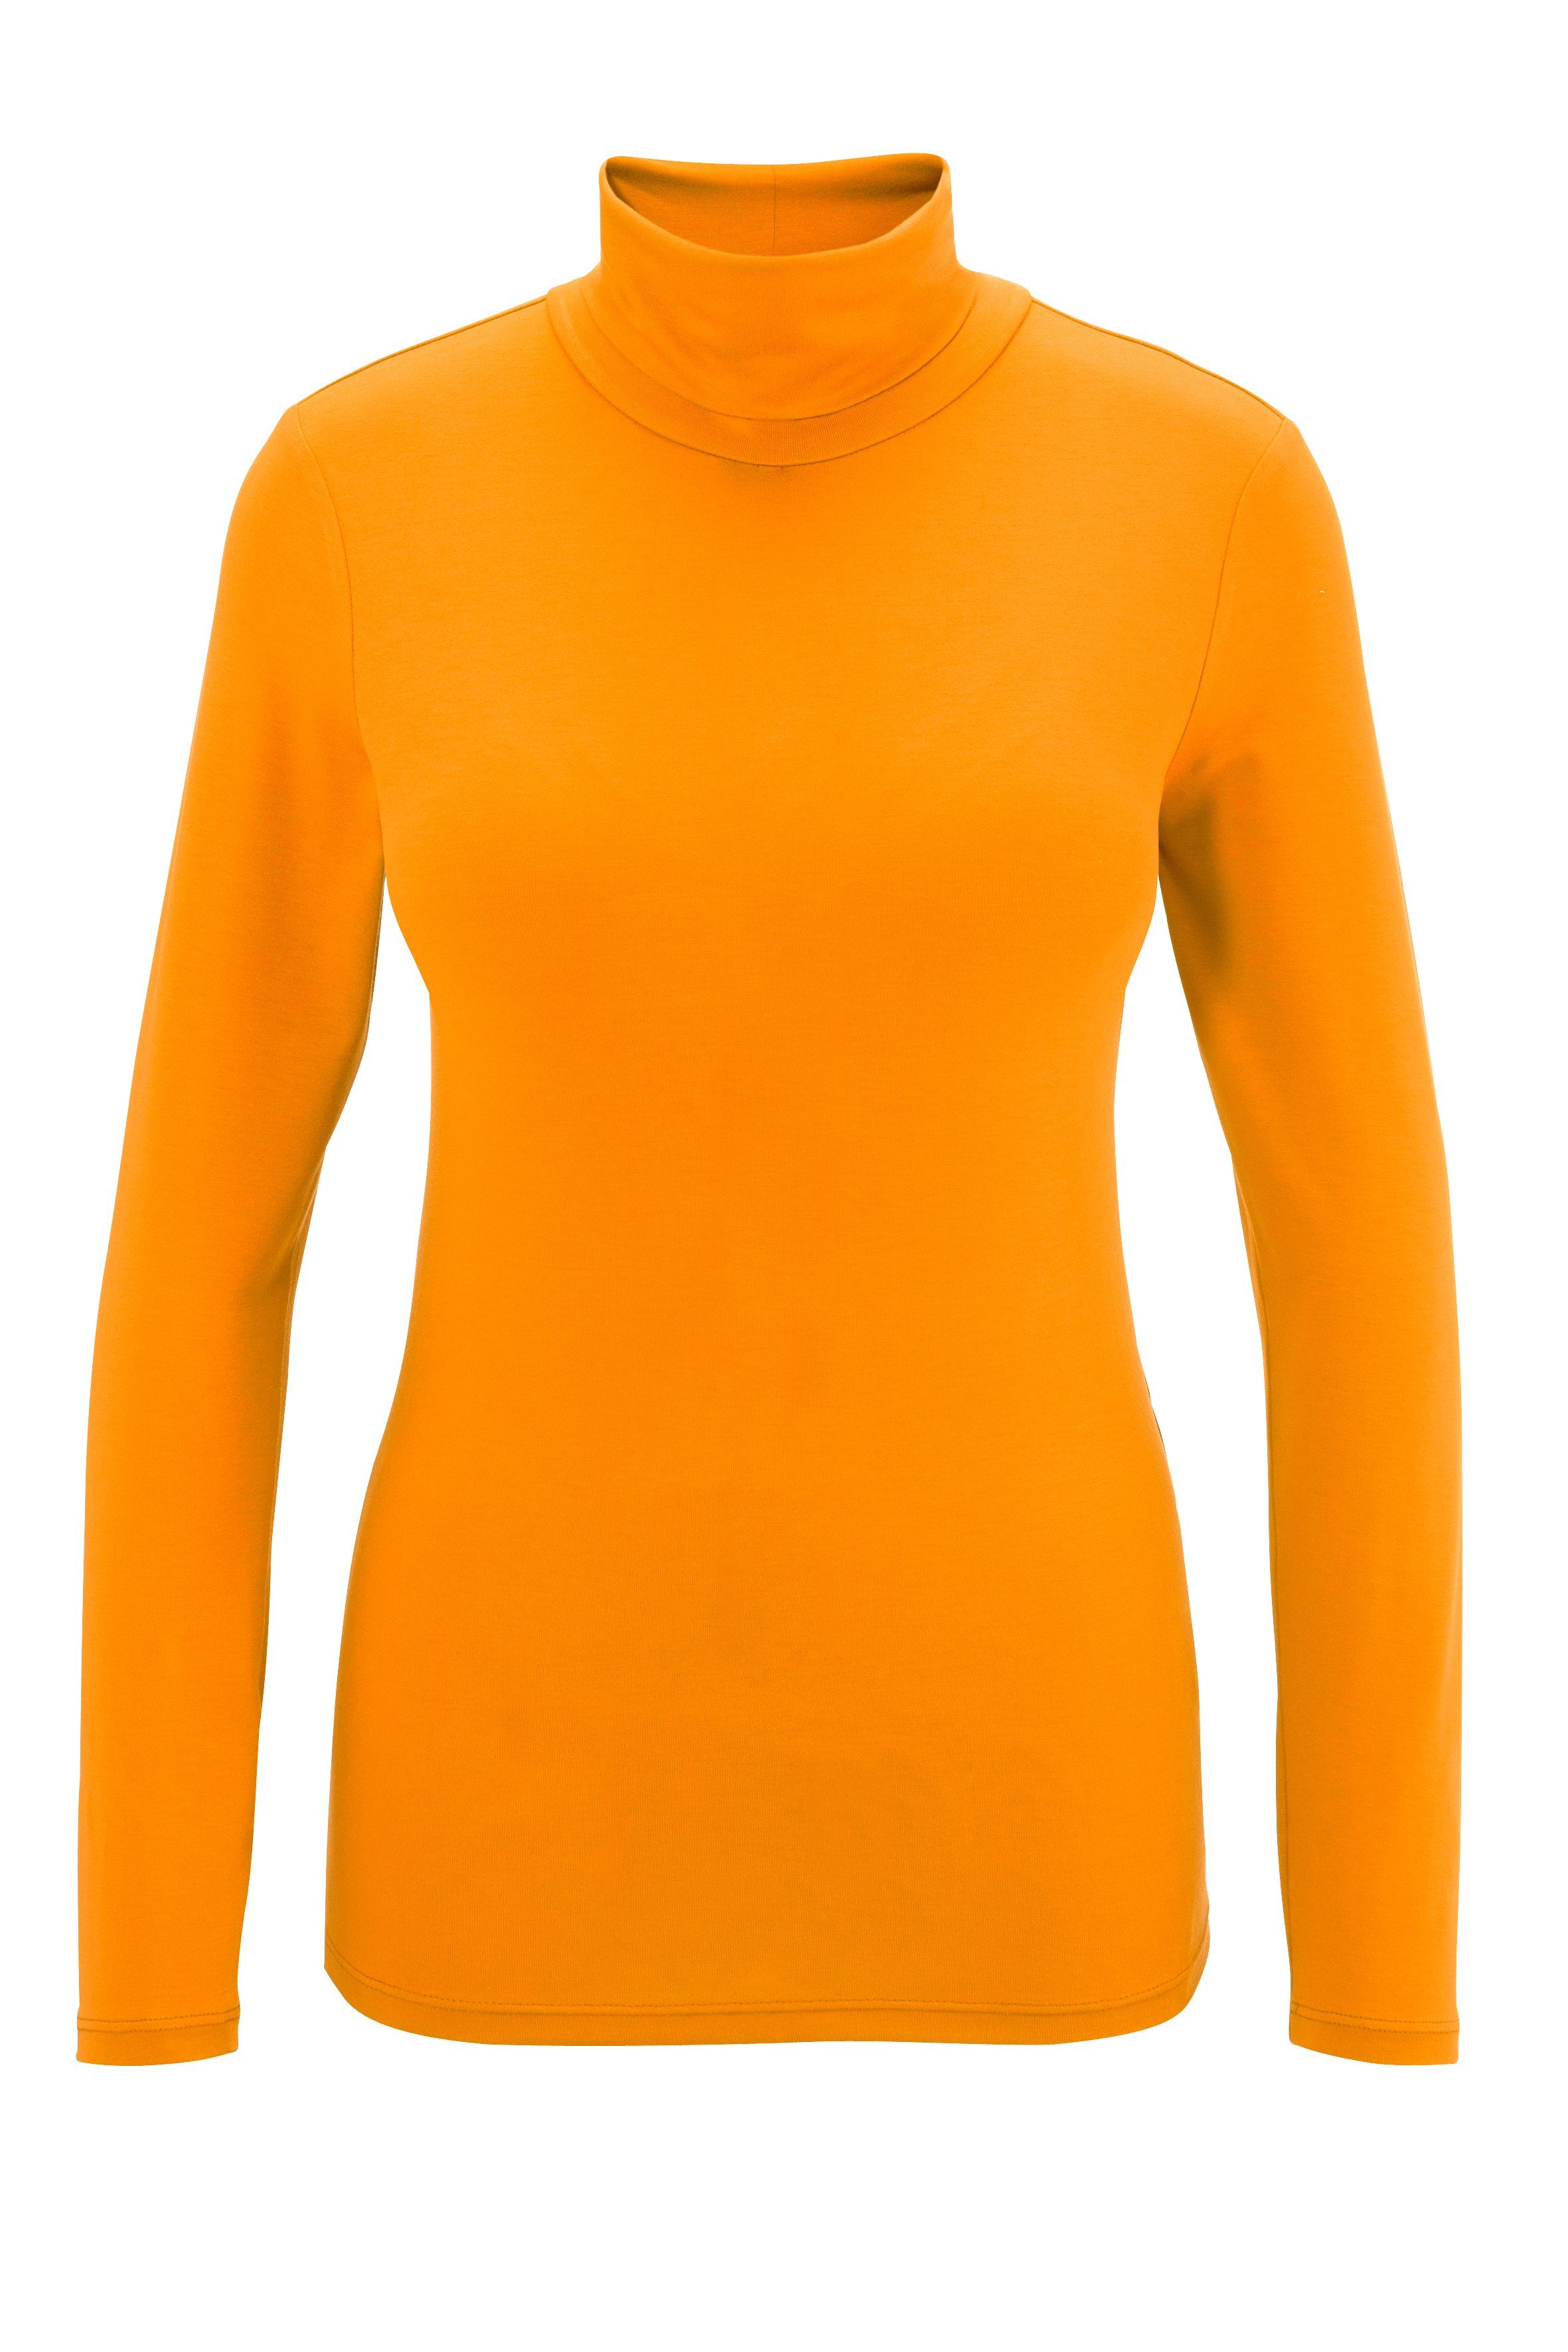 4 in oder Rollkragenshirt Aniston CASUAL trendigen schwarz-bunt-bedruckt Unis orange